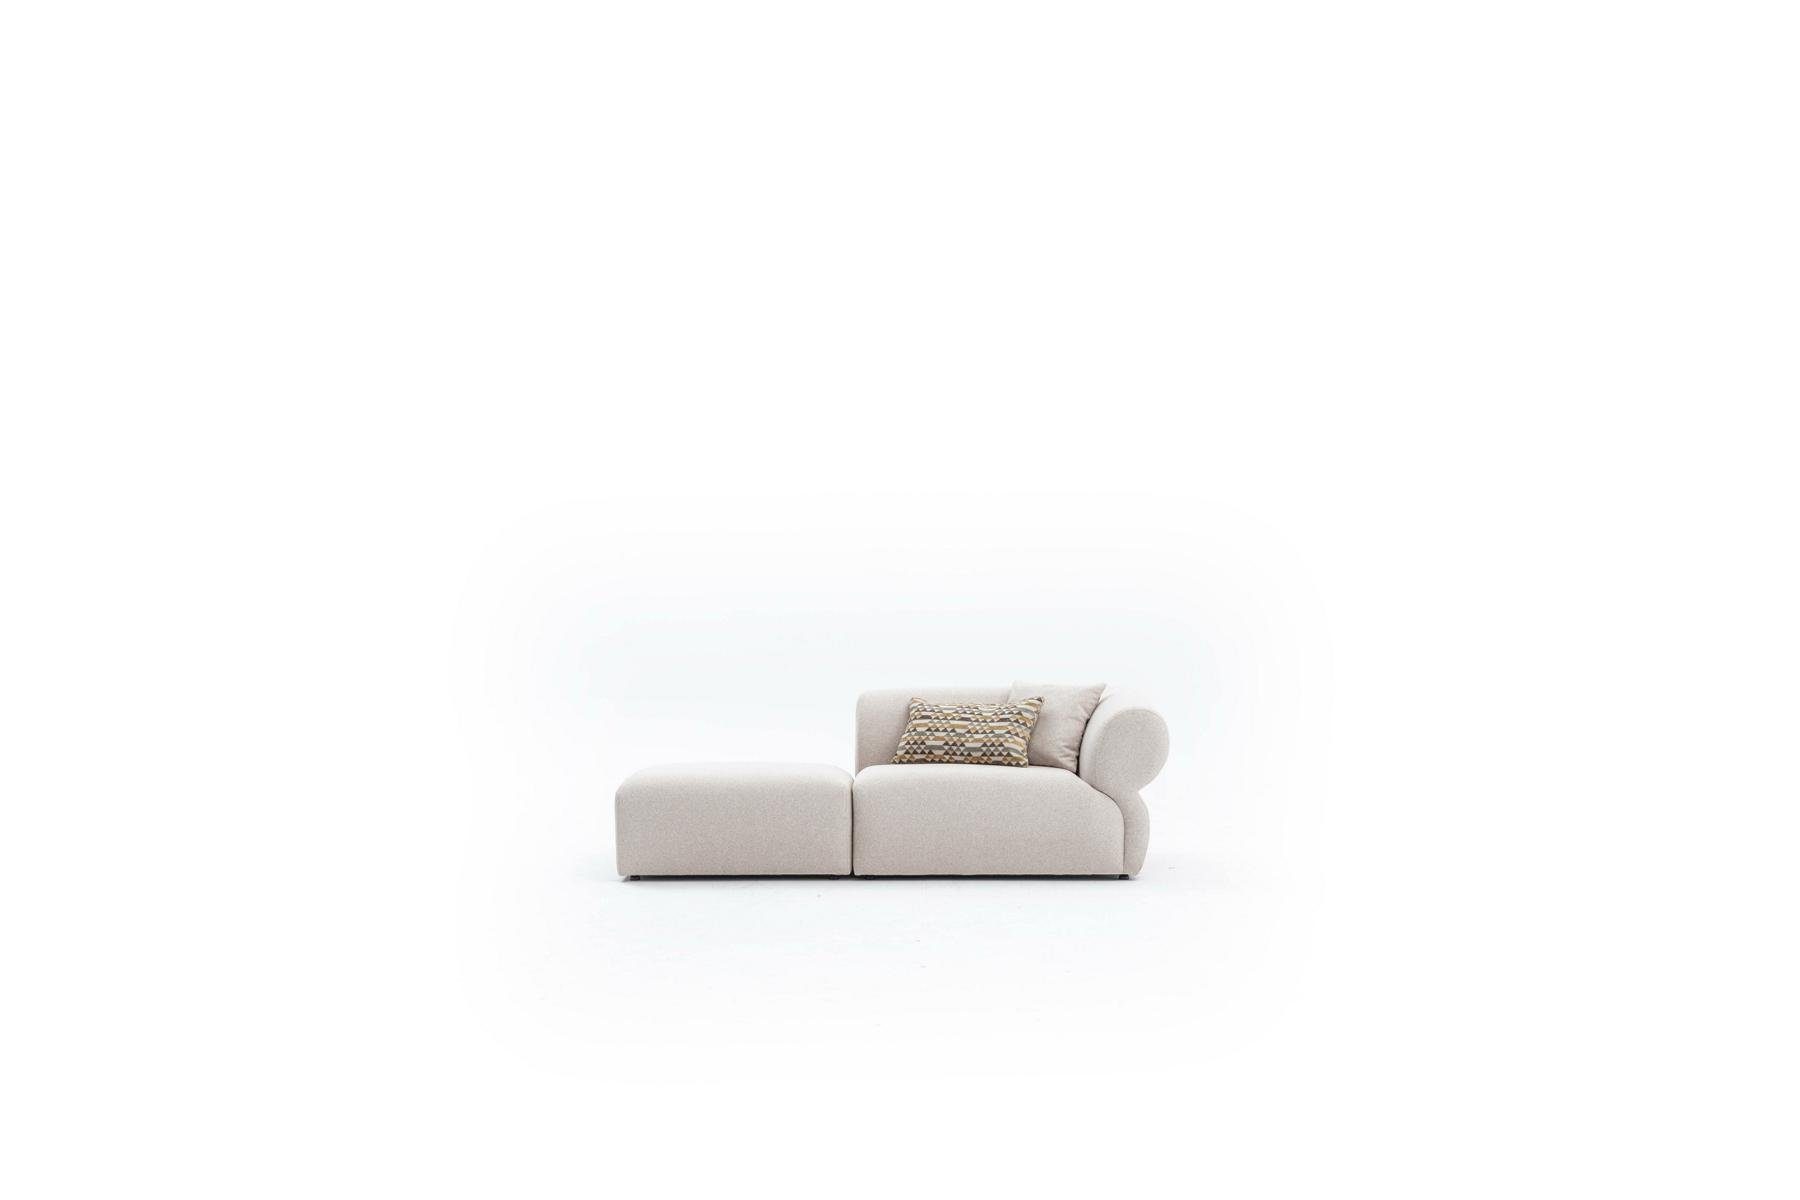 JVmoebel 3-Sitzer Textil Sofa 3 Sitzer Wohnzimmer Luxus Möbel Design Beige, Multifunktional